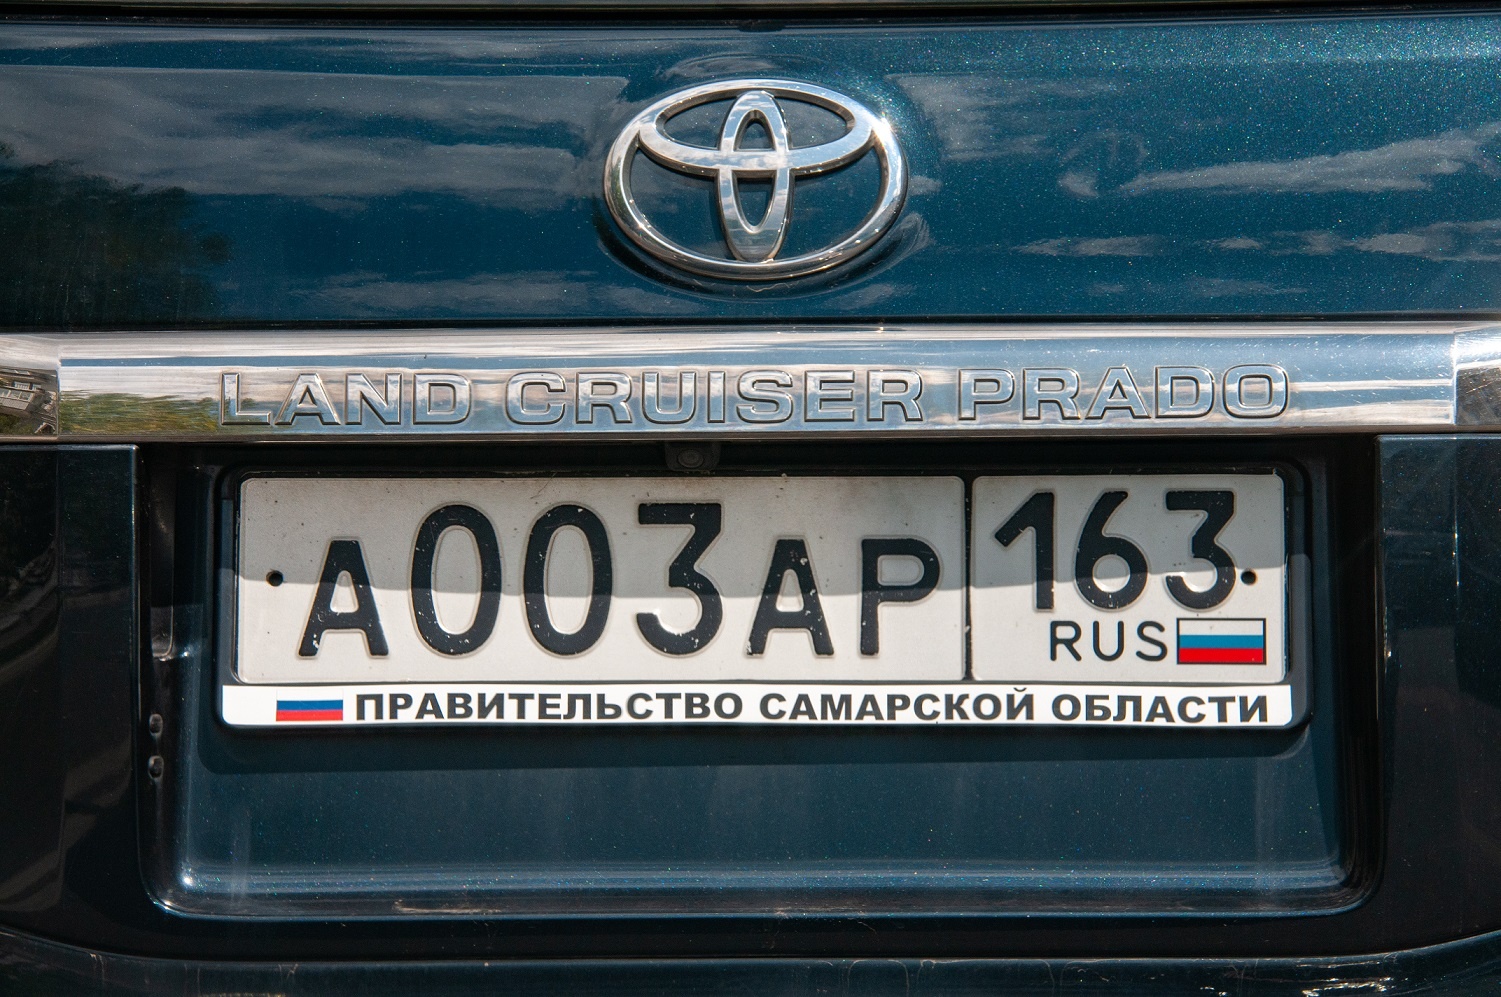 Флаг России могут сделать обязательным на автомобильных номерах